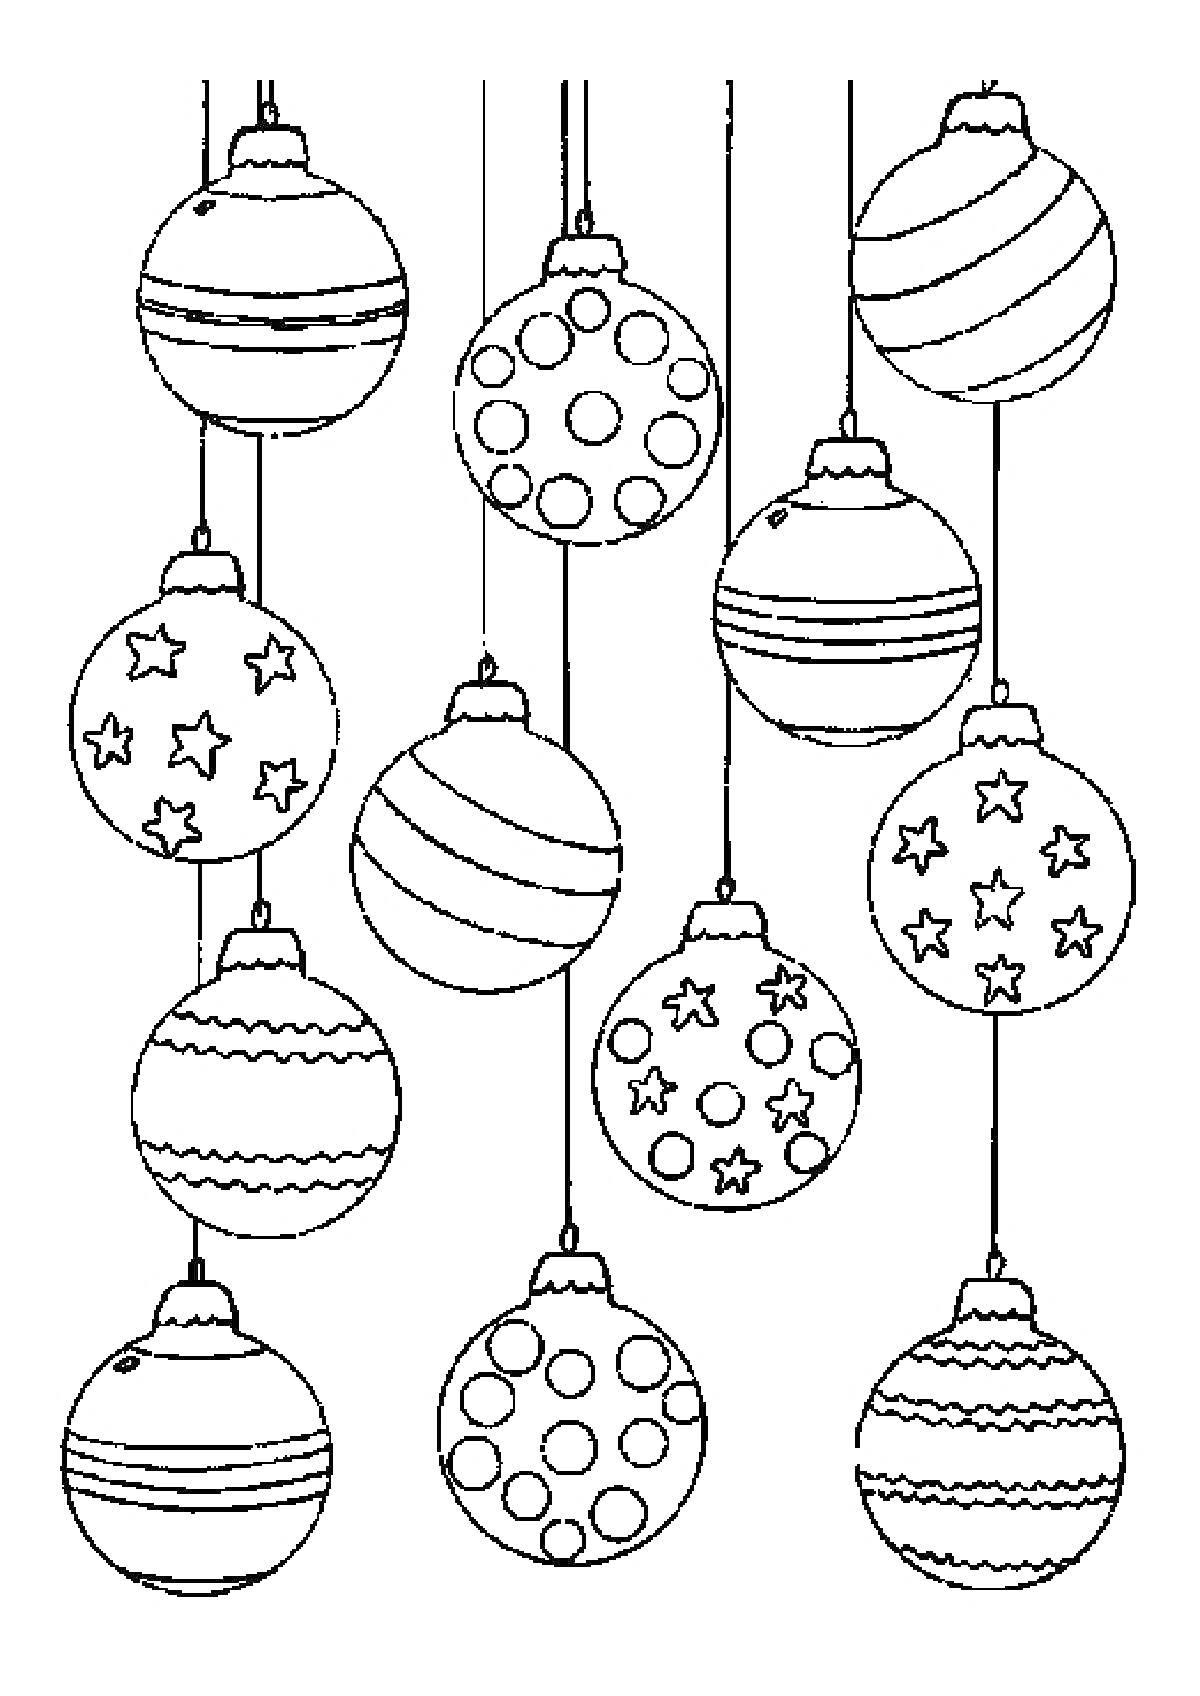 Раскраска новогодние шары на веревочках с различными узорами, включая полоски, звезды, круги и зигзаги